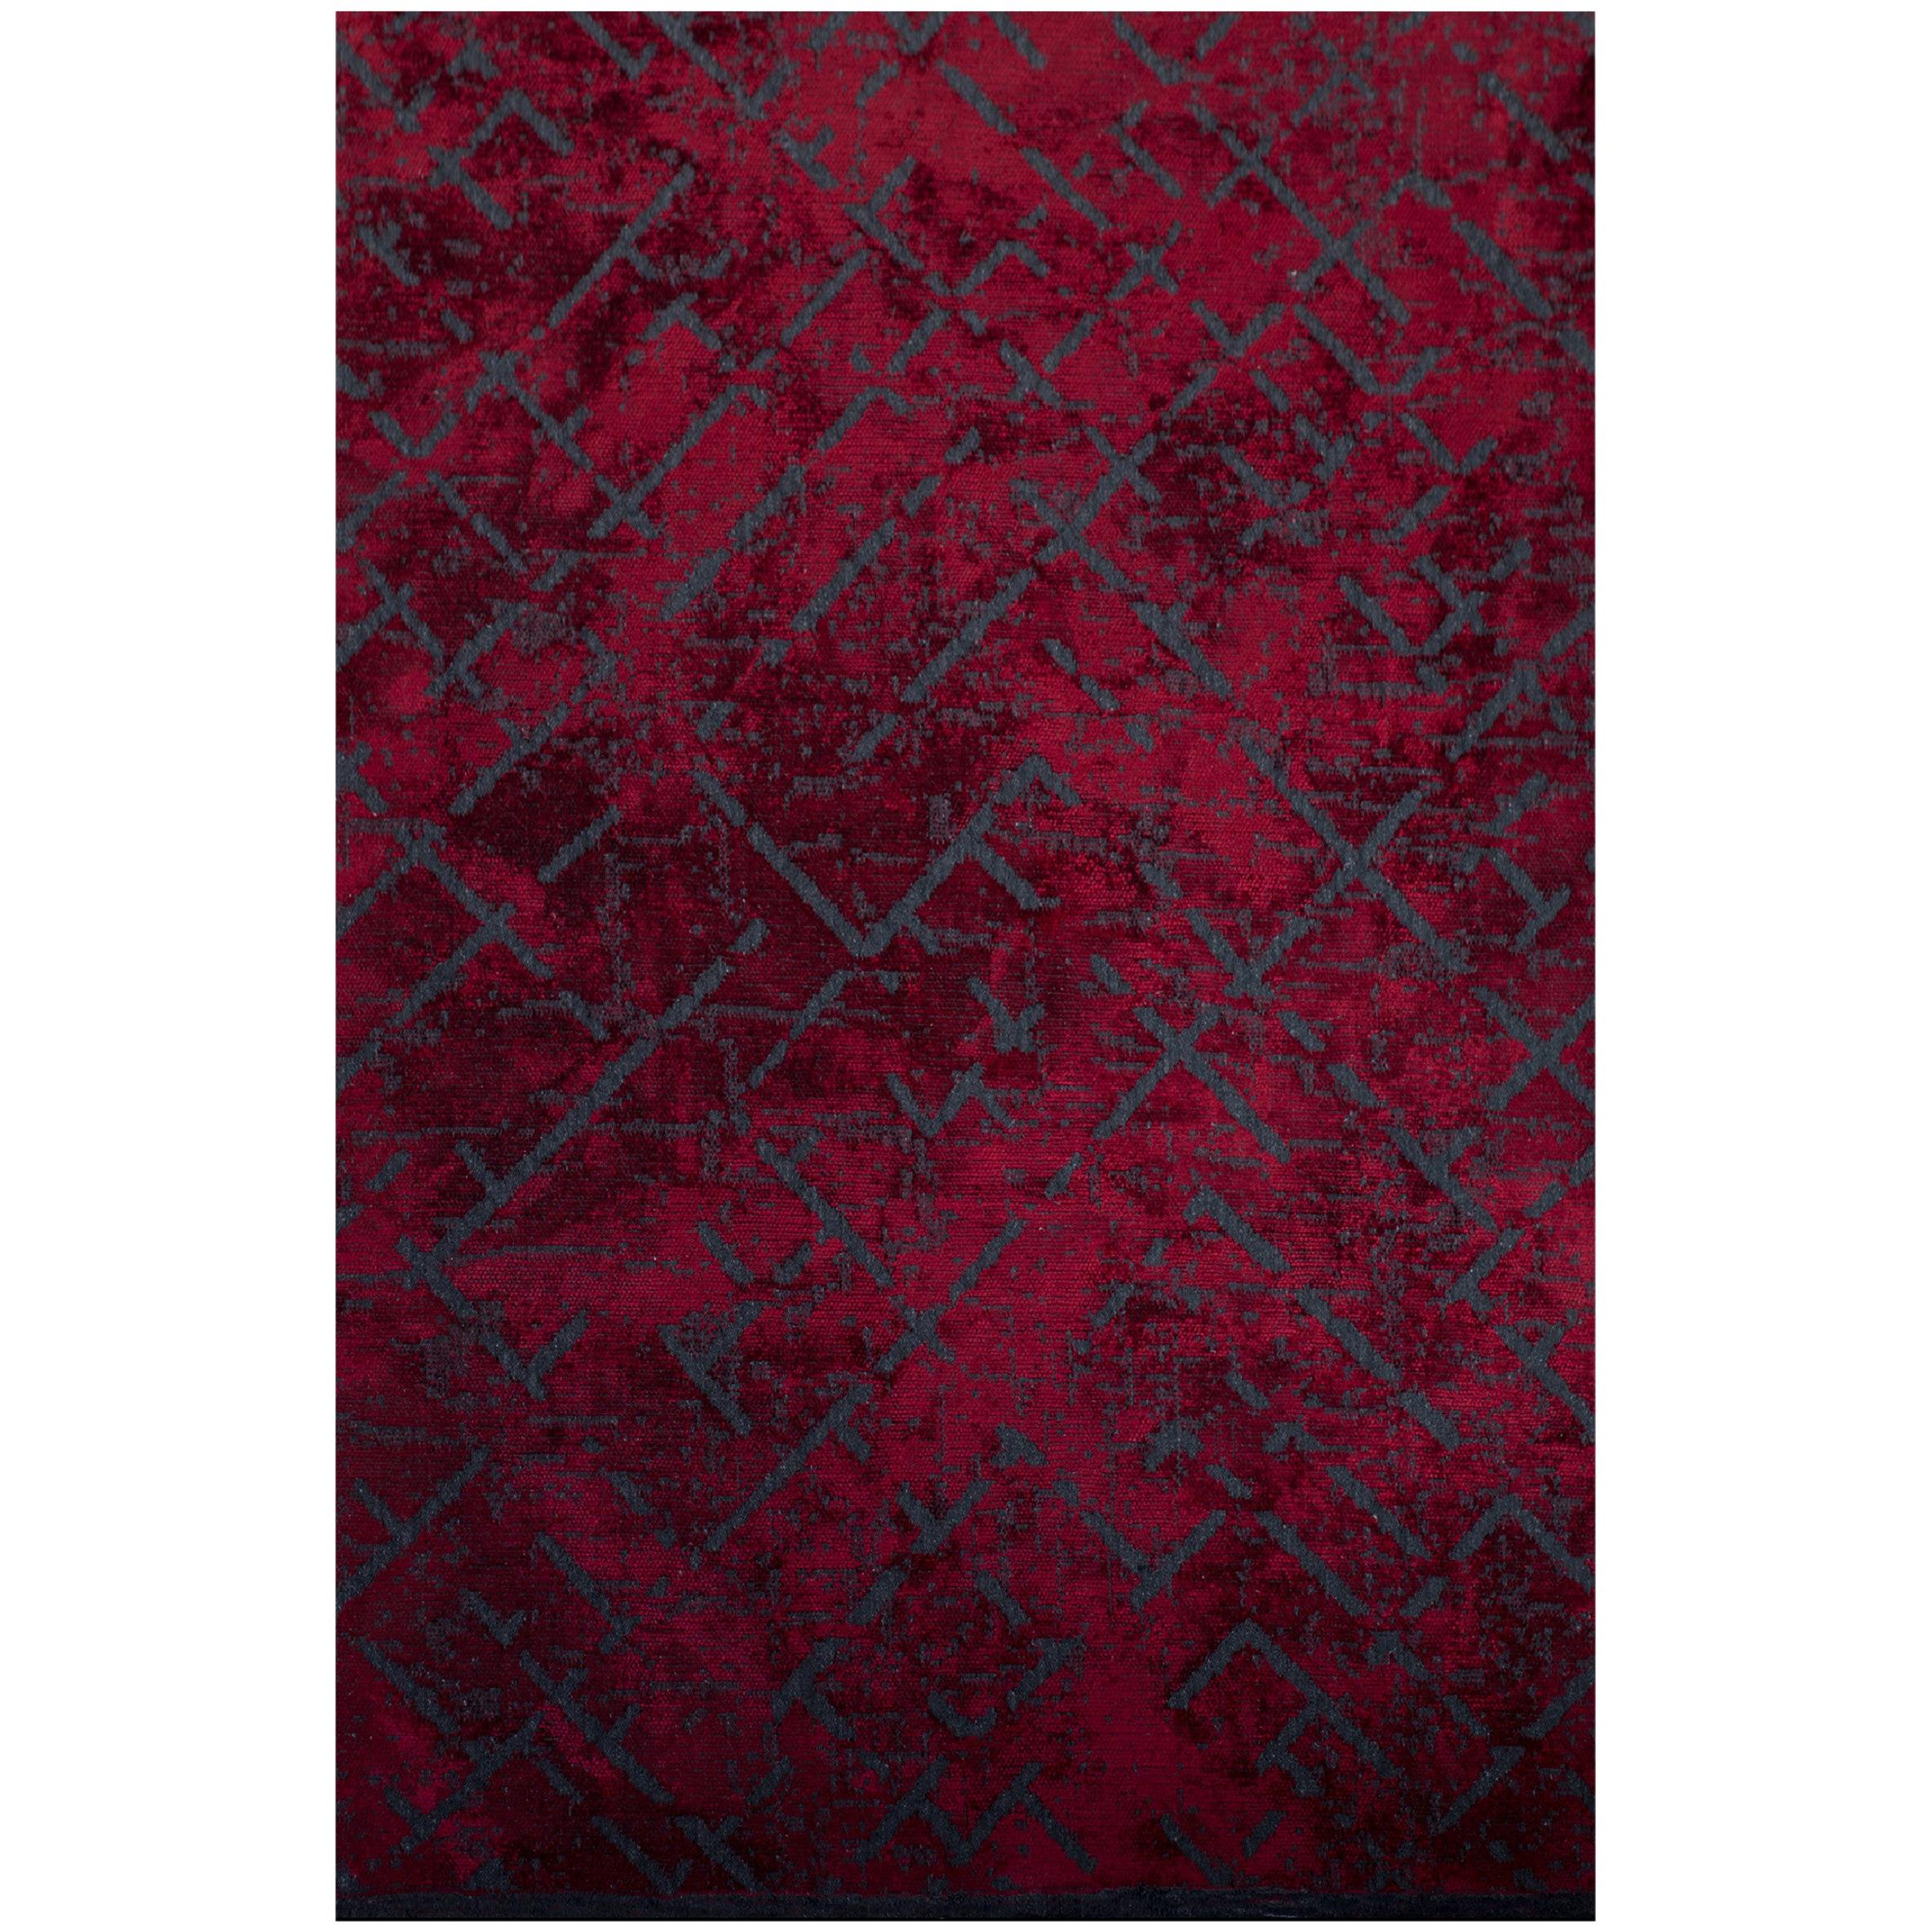 Roter und marineblauer Teppich mit zeitgenössischem abstraktem Muster aus weichem Semi-Plüsch in Rot